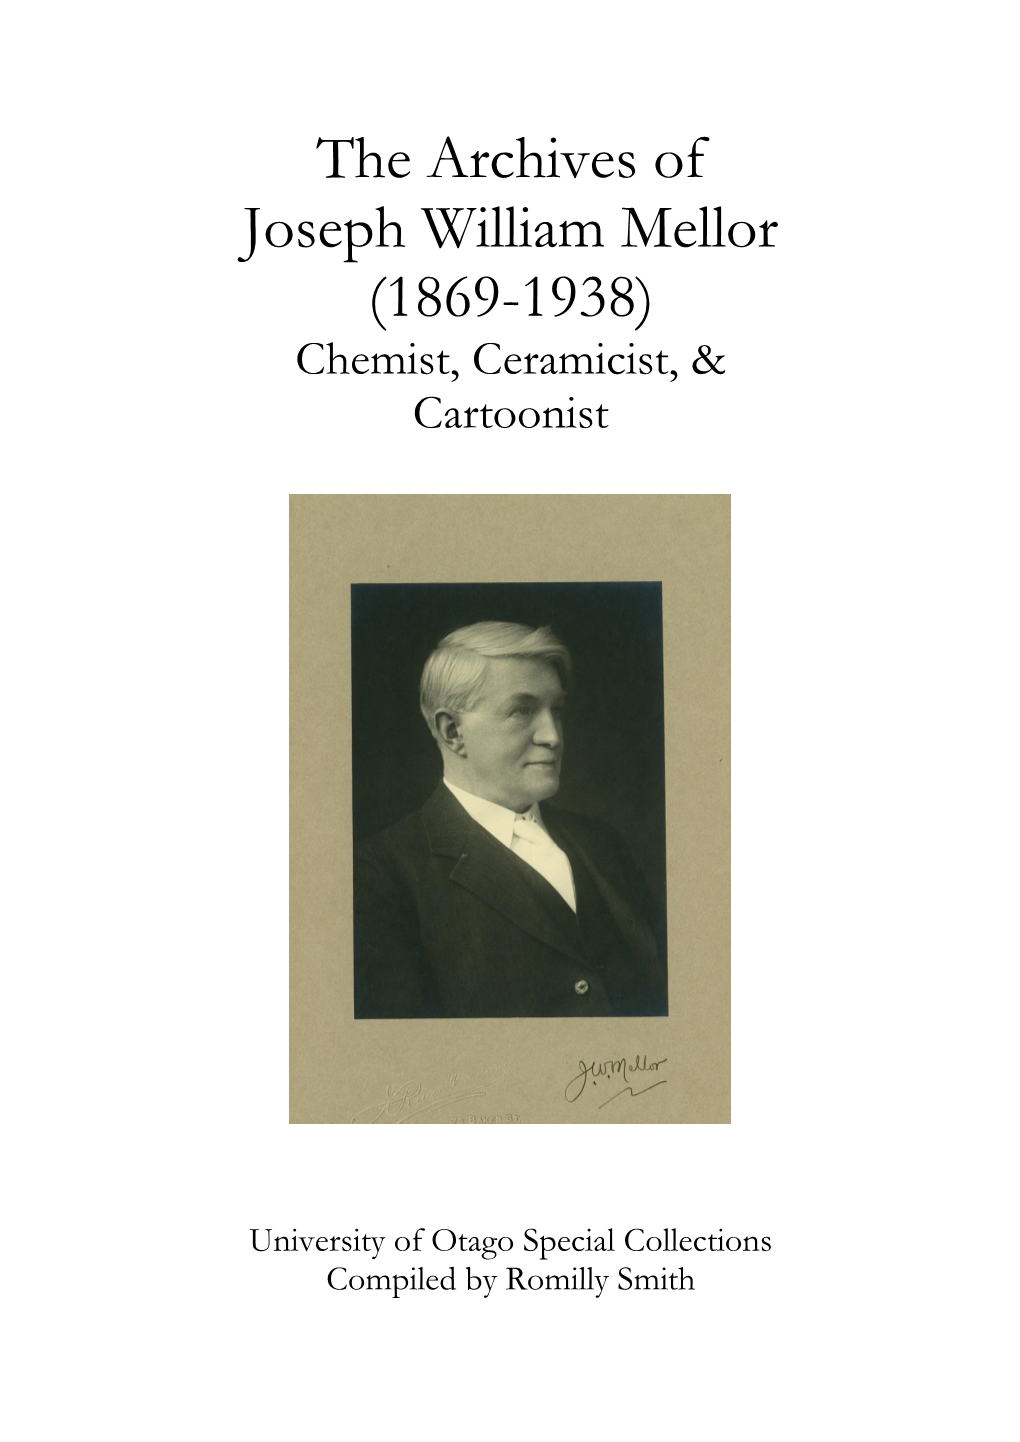 The Archives of Joseph William Mellor (1869-1938) Chemist, Ceramicist, & Cartoonist